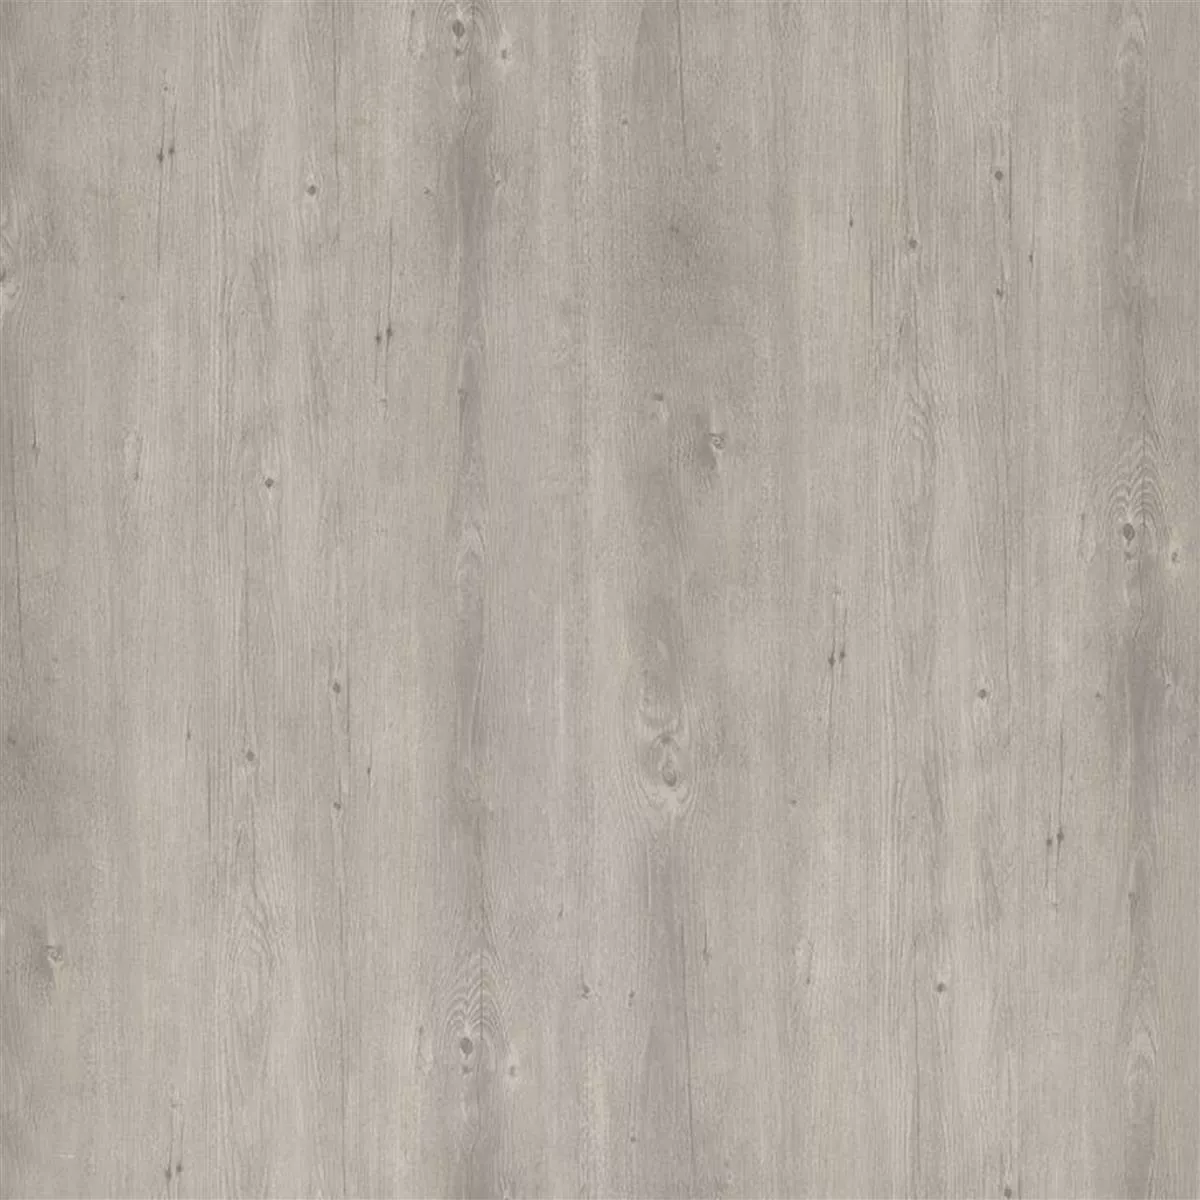 Δάπεδο Από Bινύλιο Σύστημα Κλικ Greywood Γκρί 17,2x121cm